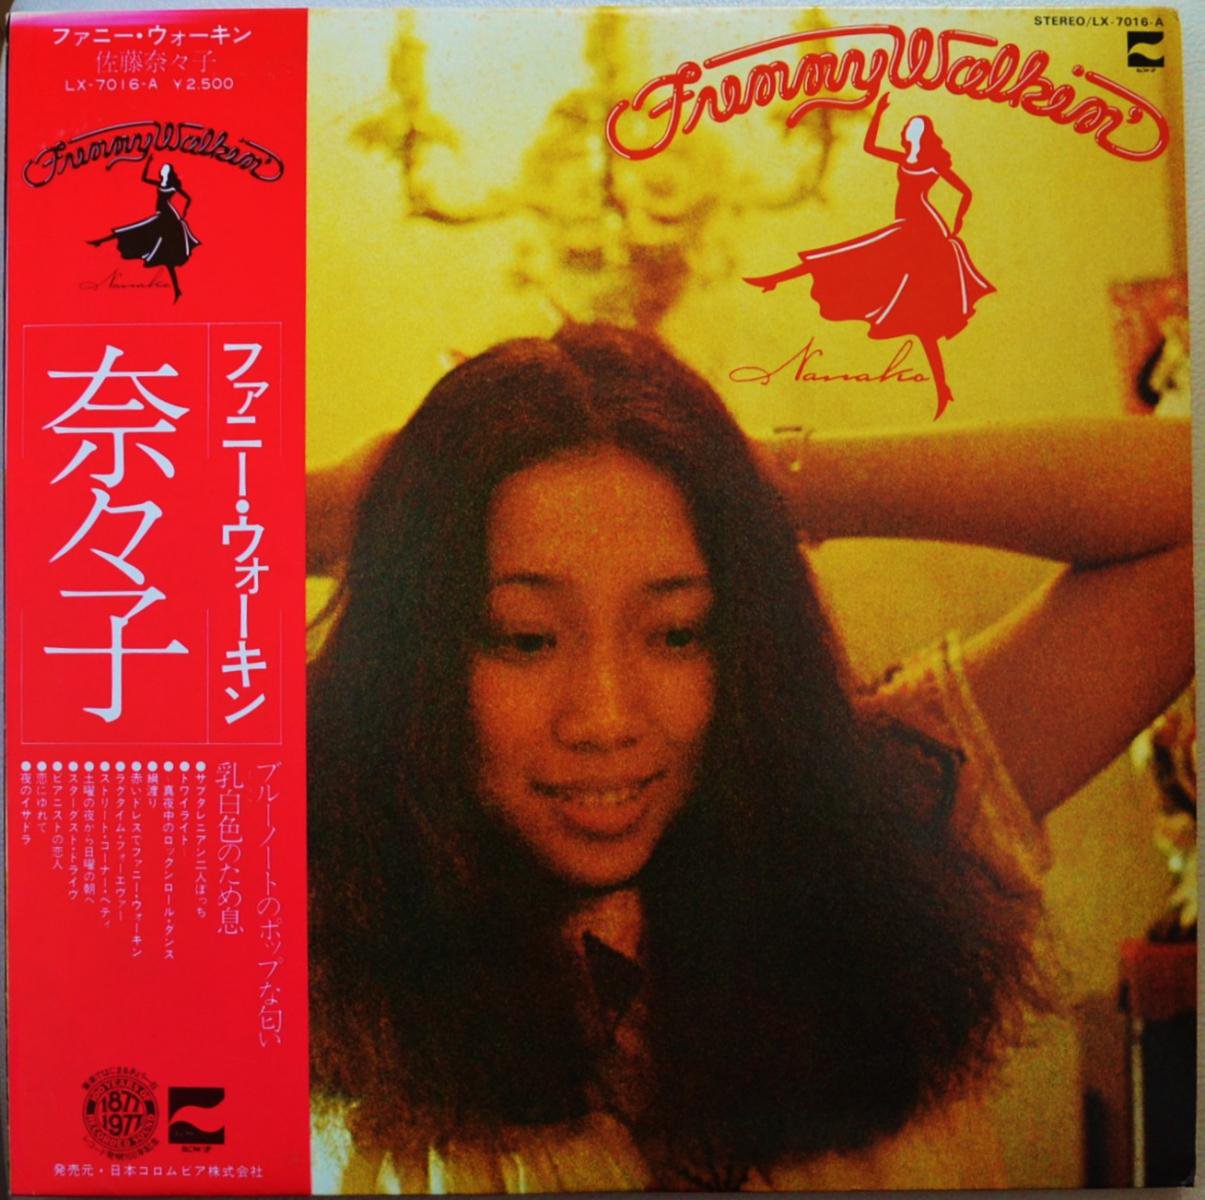 佐藤奈々子 NANAKO SATO / ファニー・ウォーキン FUNNY WALKIN' (LP 